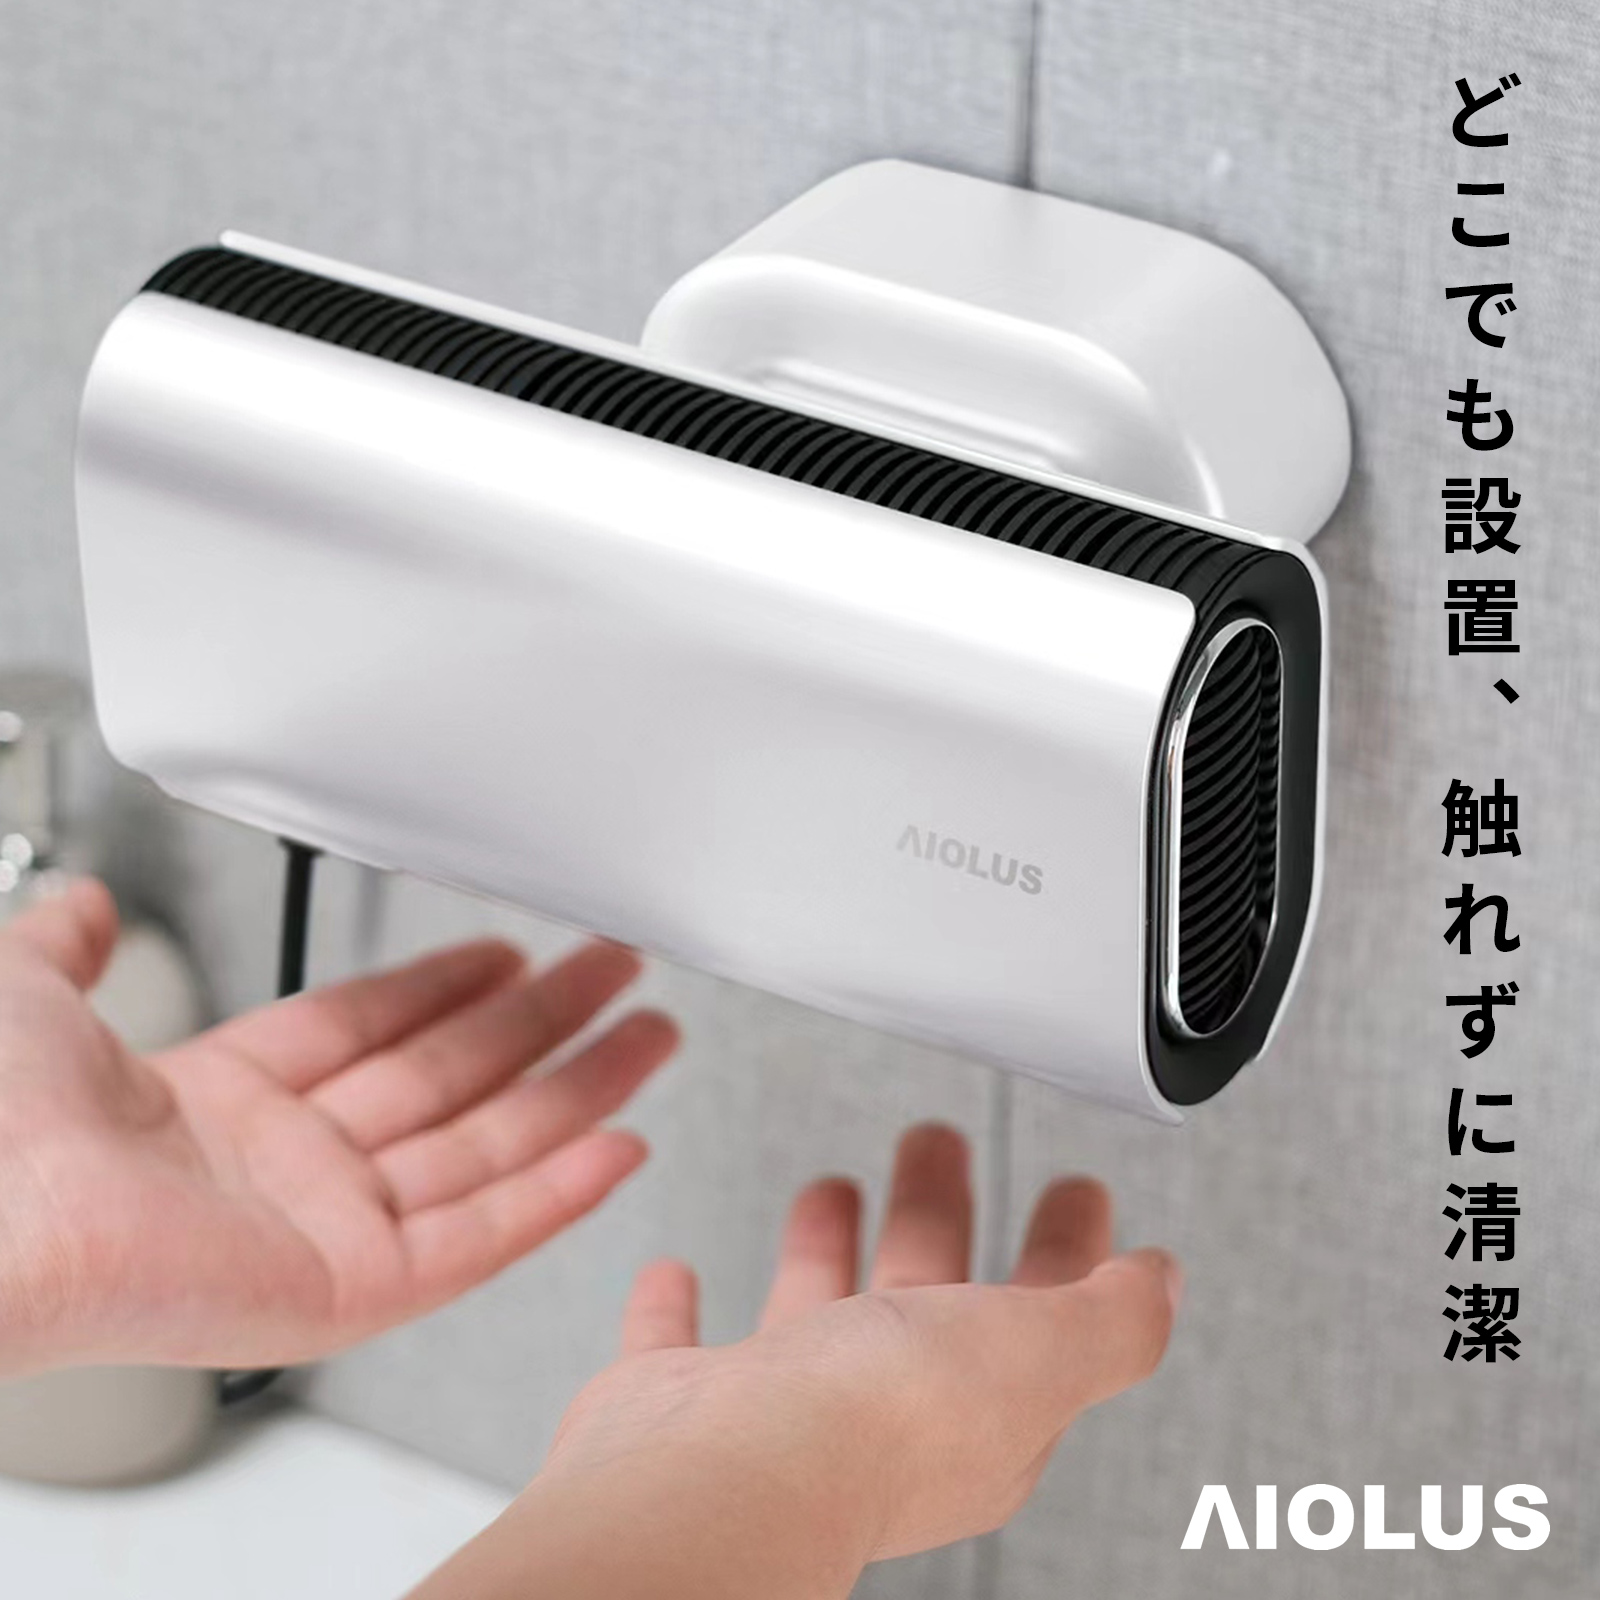 【楽天市場】AIOLUS 家庭用ハンドドライヤー Hand Dryer White 非接触/温風/スタンド付き/工事不要 Nyuhd-210W :  DMM.com 楽天市場店